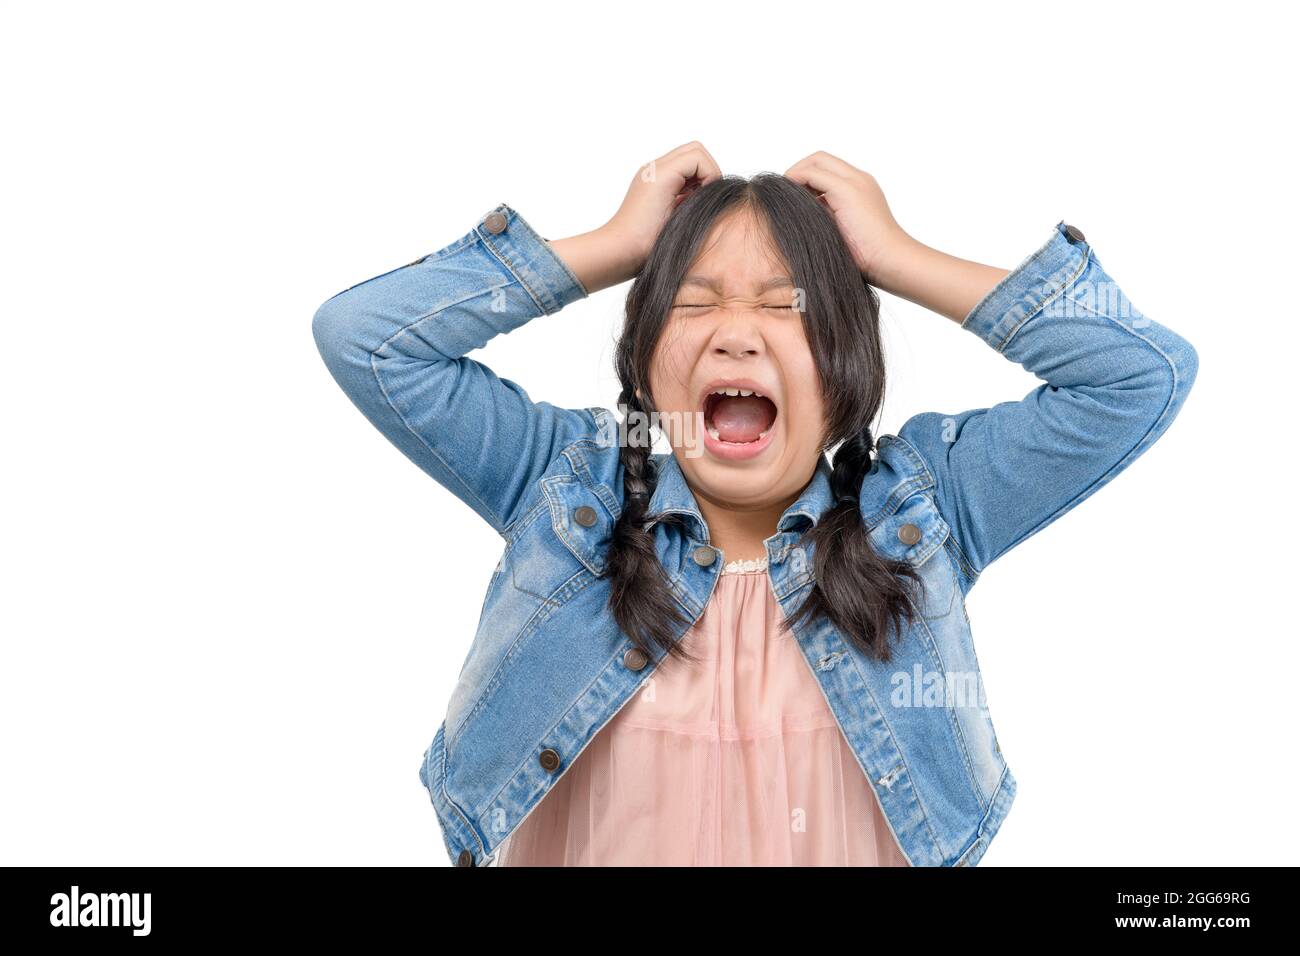 Portrait eines kleinen asiatischen Mädchens, das mit einem offenen Mund und einem verrückten Ausdruck schreit. Überrascht oder schockiert Gesichter Konzept Stockfoto